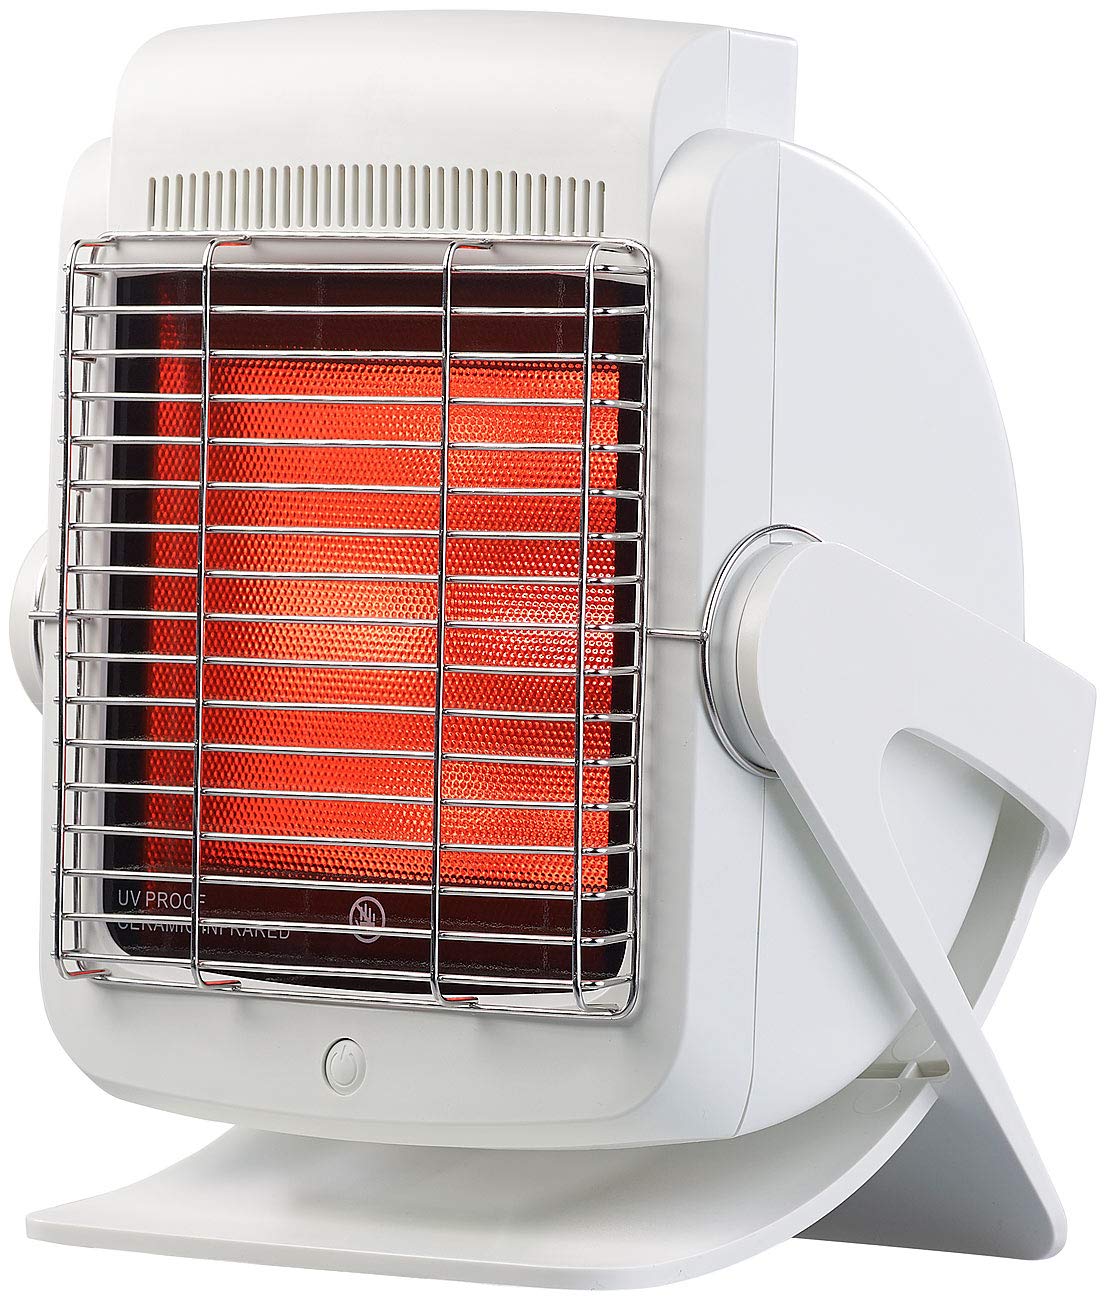 newgen medicals Rotlichtlampe: Medizinischer Infrarot-Wärmestrahler, Glaskeramikplatte, 200 Watt (Medizinische Infrarotlampe, Infrarotlicht, Massagegerät)